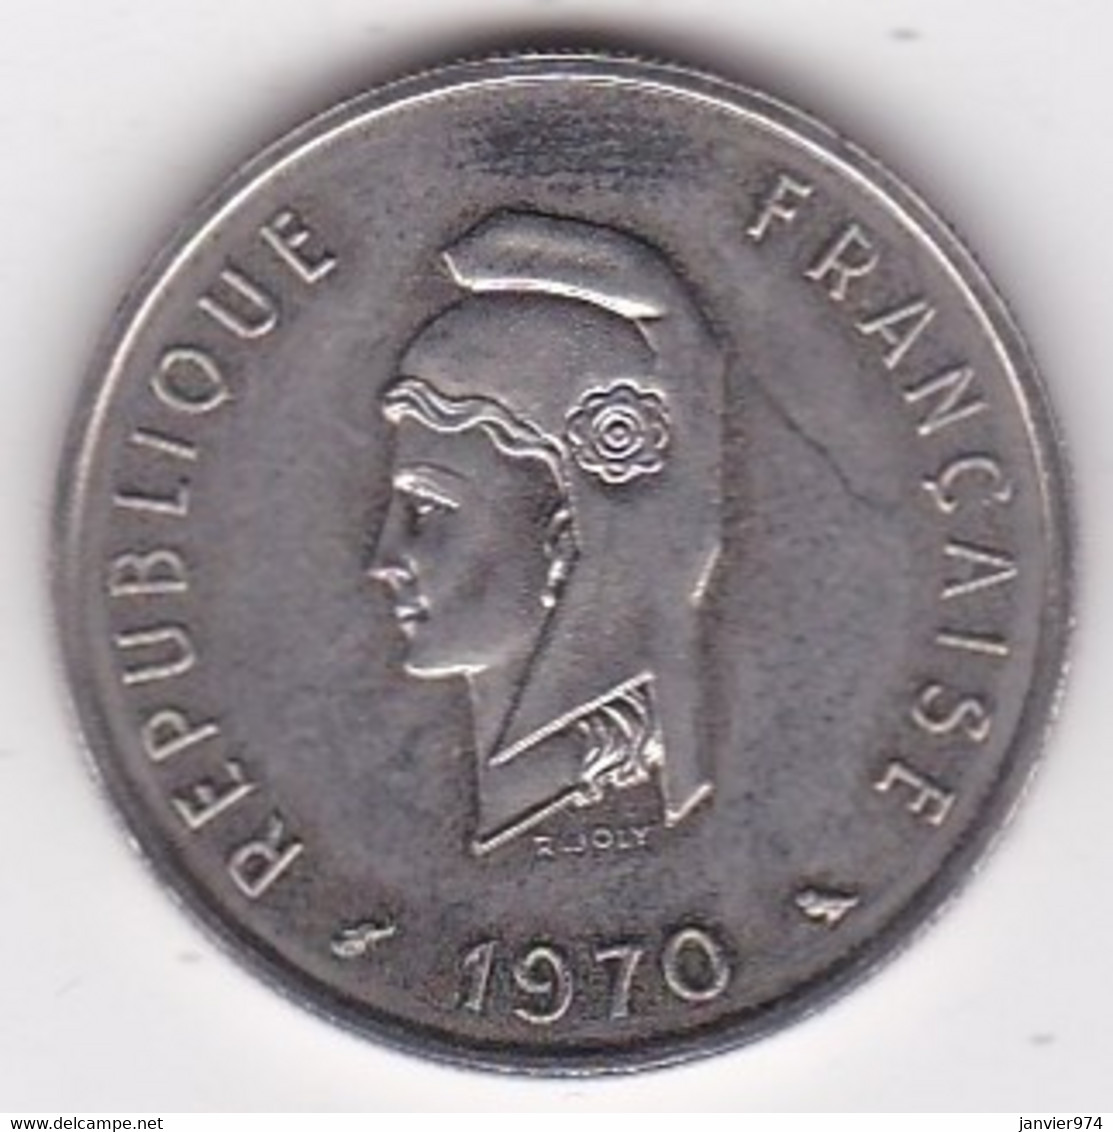 Territoire Français Des AFARS Et Des ISSAS 50 Francs ESSAI 1970 Cupro Nickel KM# E6 - Djibouti